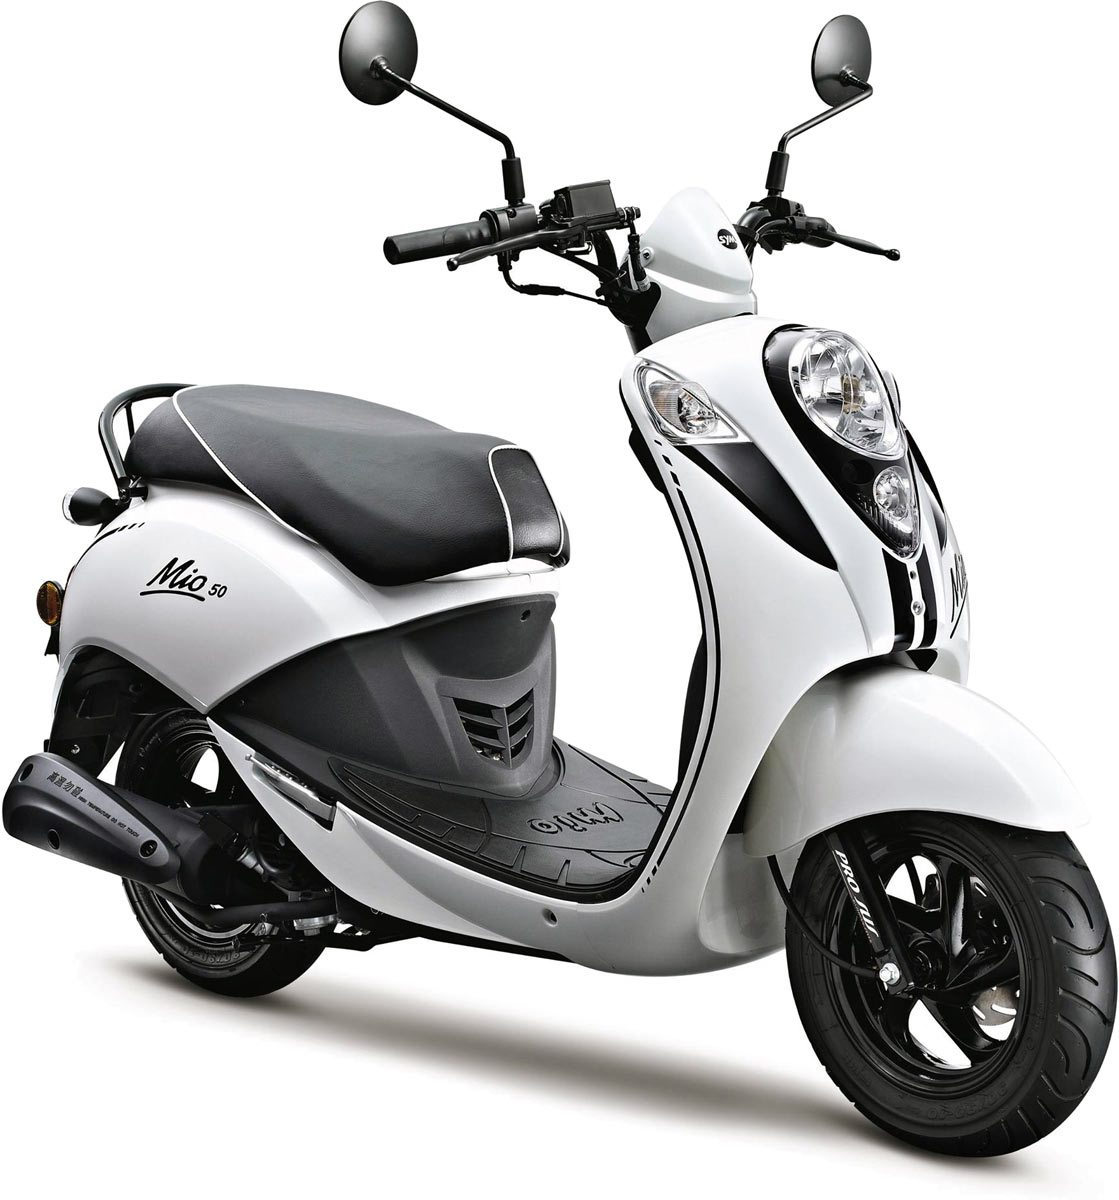 Le scooter rétro 50cc est également proposé en coloris blanc et noir